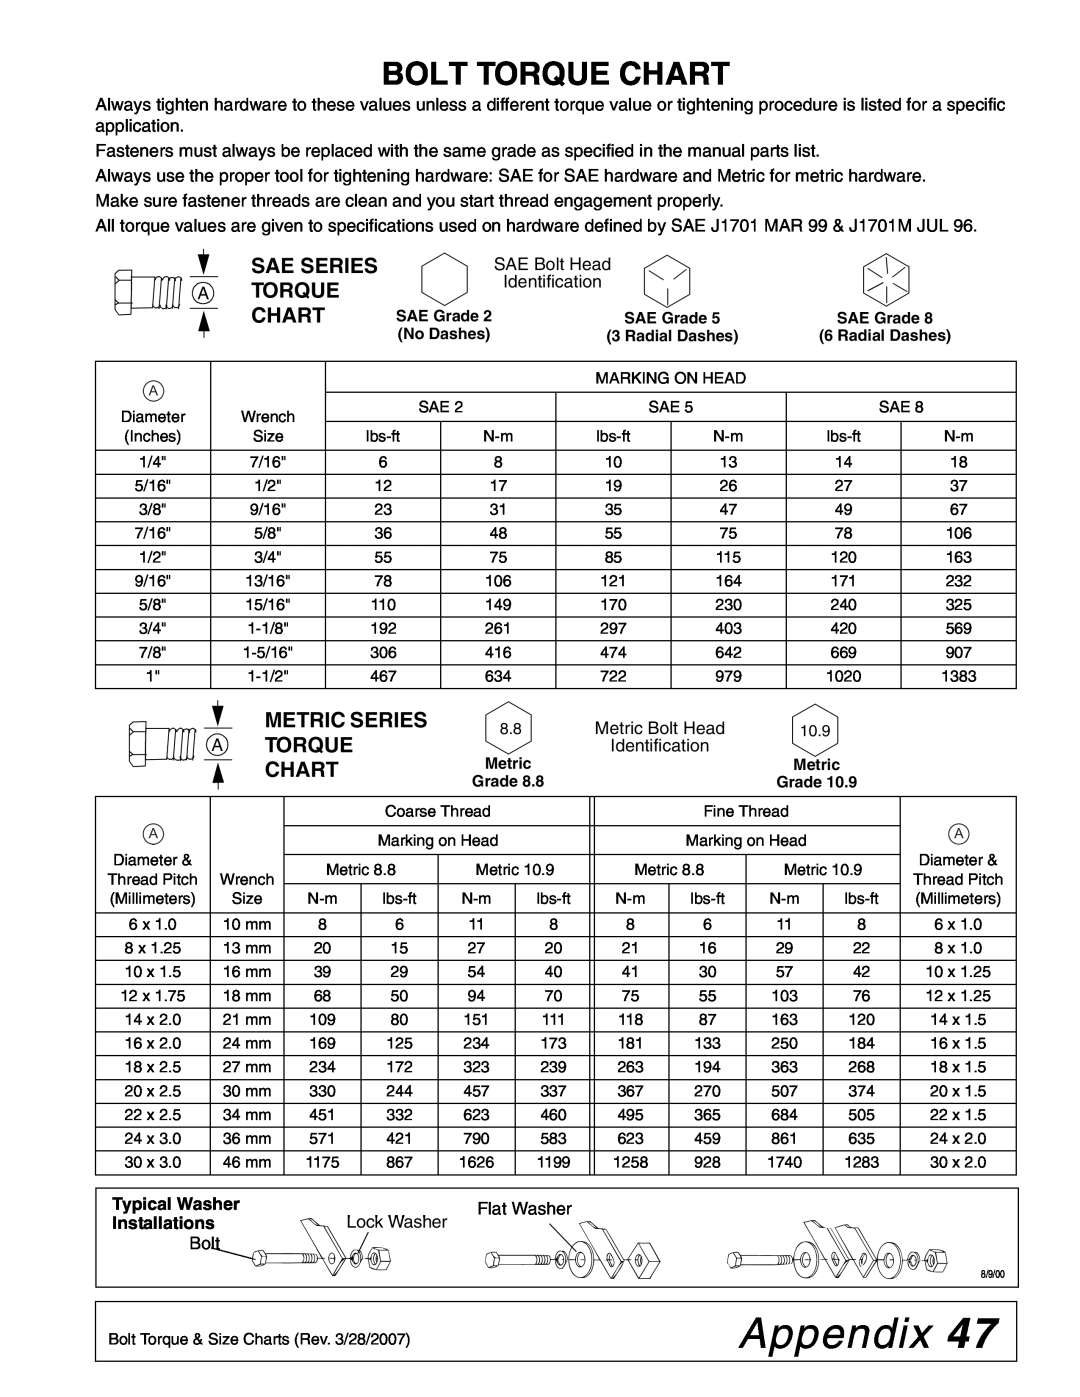 Woods Equipment HC60, HC54, HC48, HC72 Appendix, Bolt Torque Chart, Sae Series A Torque Chart, Metric Series Atorque Chart 